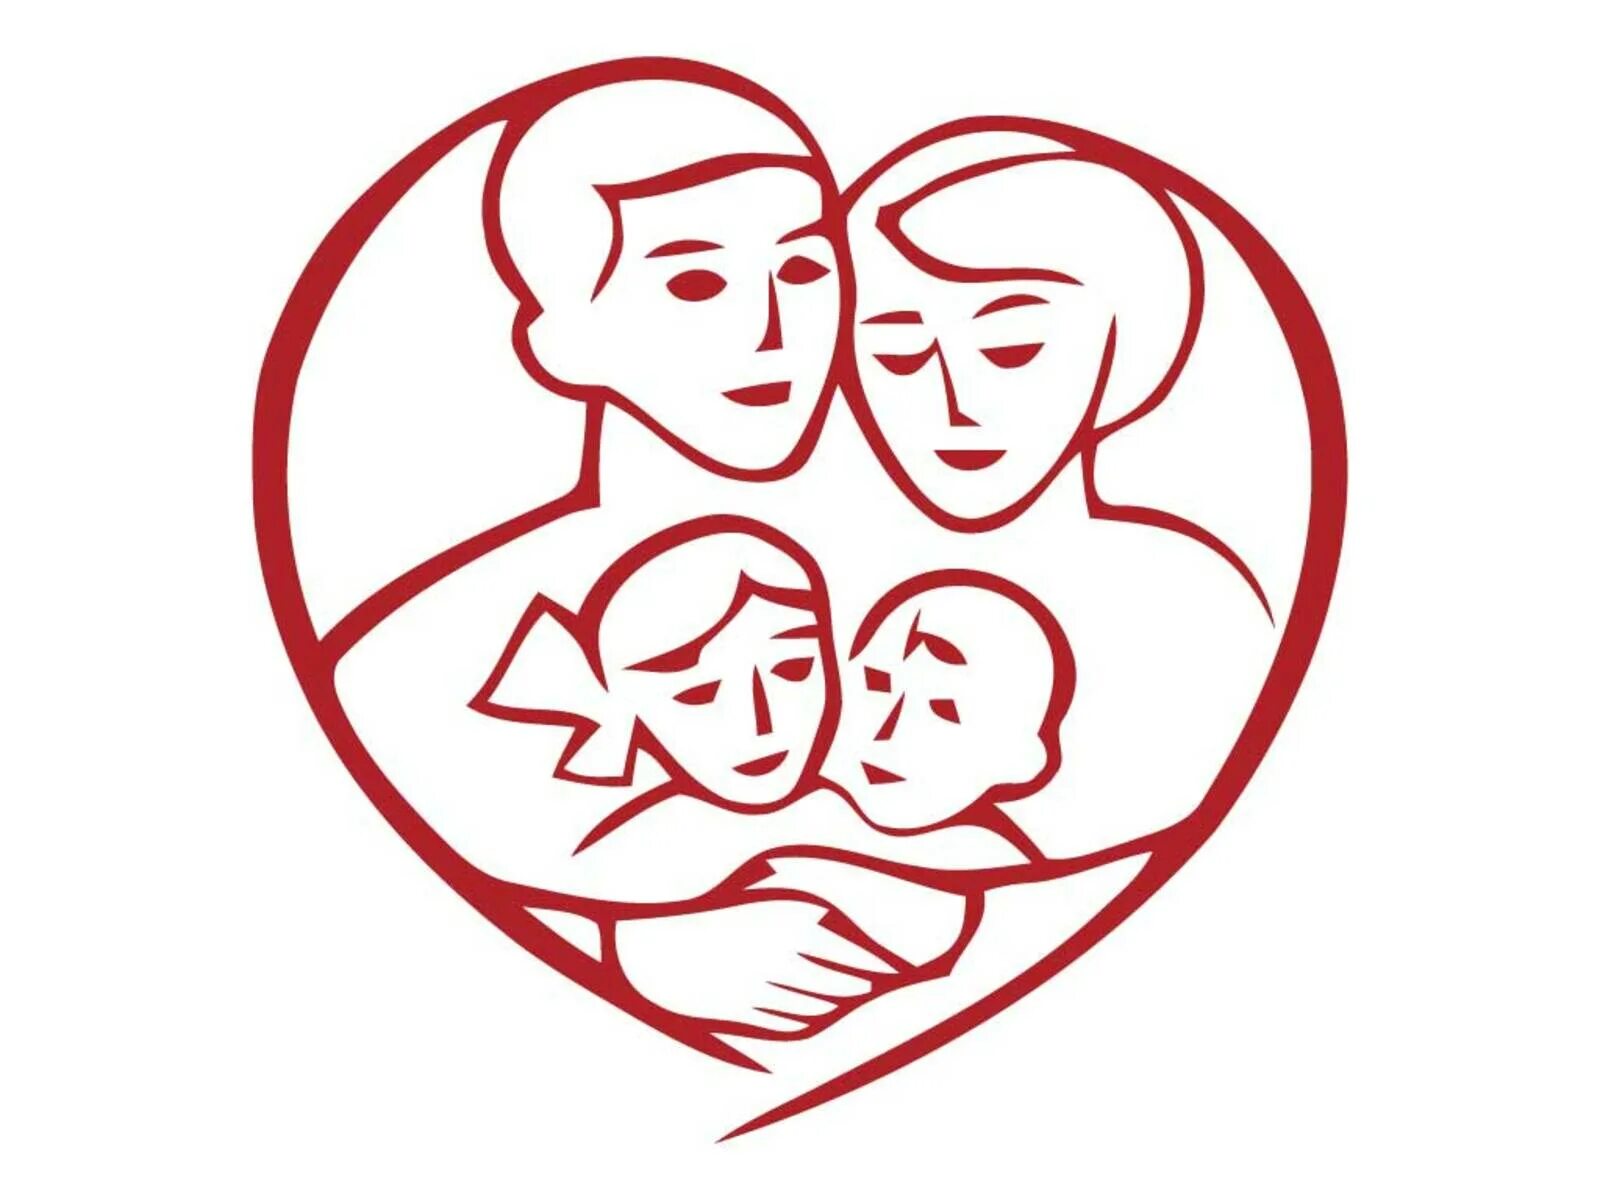 Мс сердца. Символ семьи. Символ счастливой семьи. Символ дружной семьи. Символическое изображение семьи.